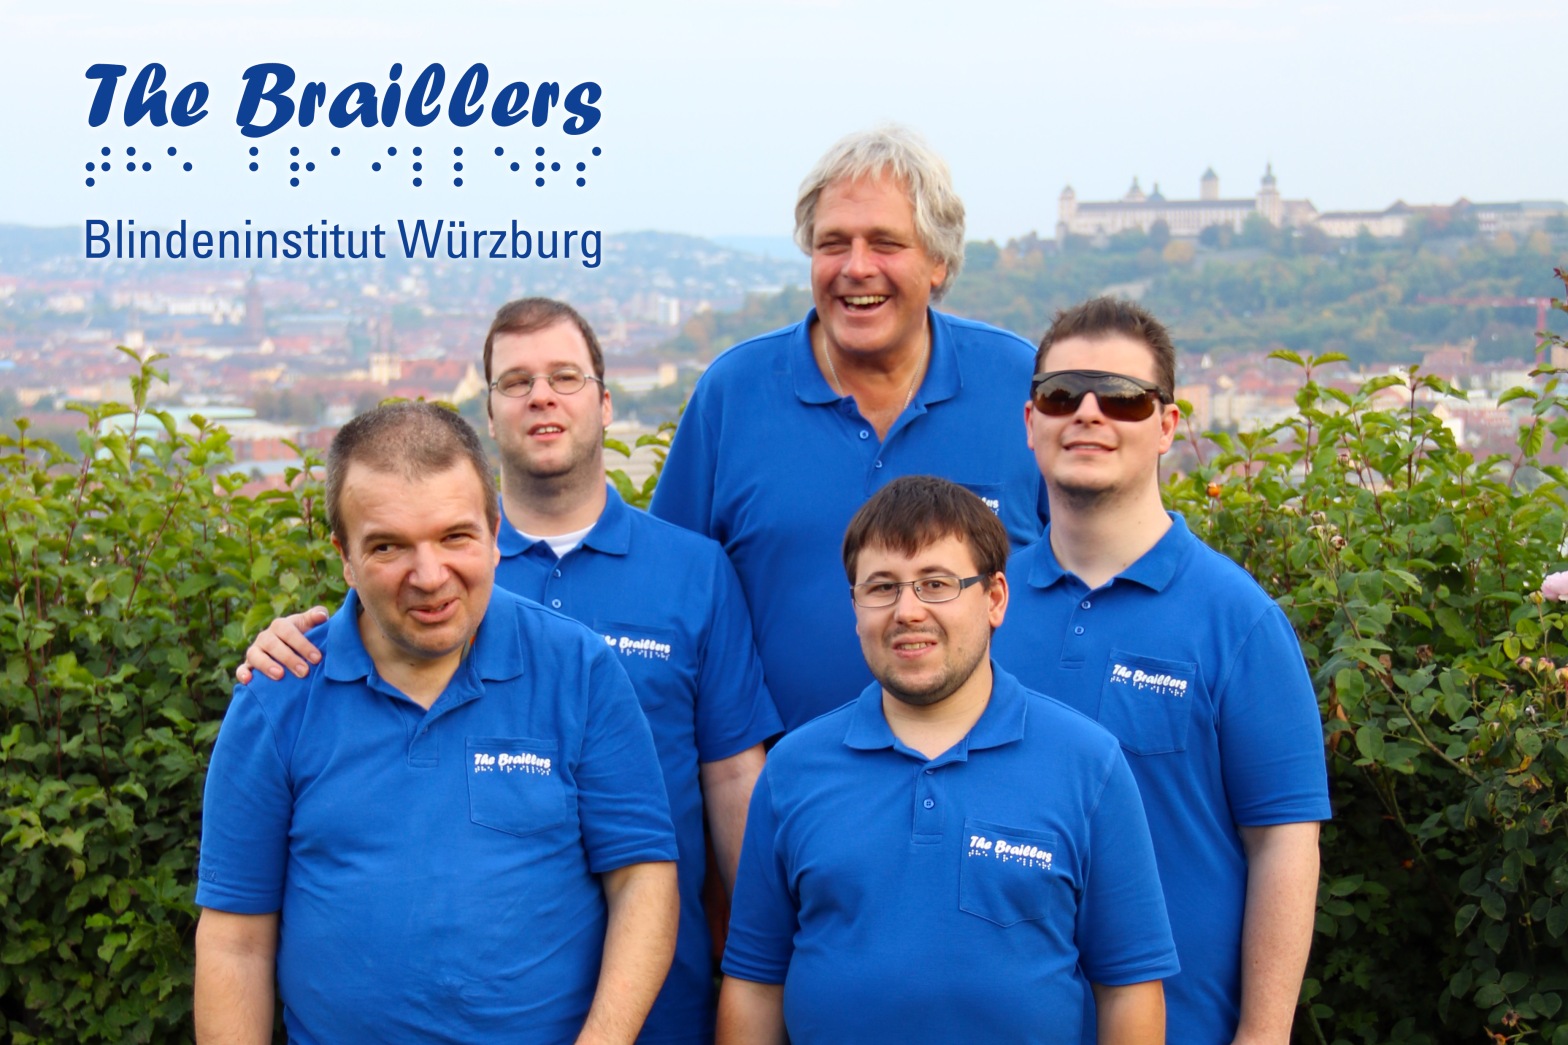 Foto von den fünf Mitgliedern der Band "The Braillers" in bleuen Band-T-Shirts, vor einer niedrigen Hecke, dahinter im Hintergrund das schöne Panorama von Würzburg, samt Burg, dazu das Logo der Band inklusive Schriftzug "Blindeninstitut Würzburg"